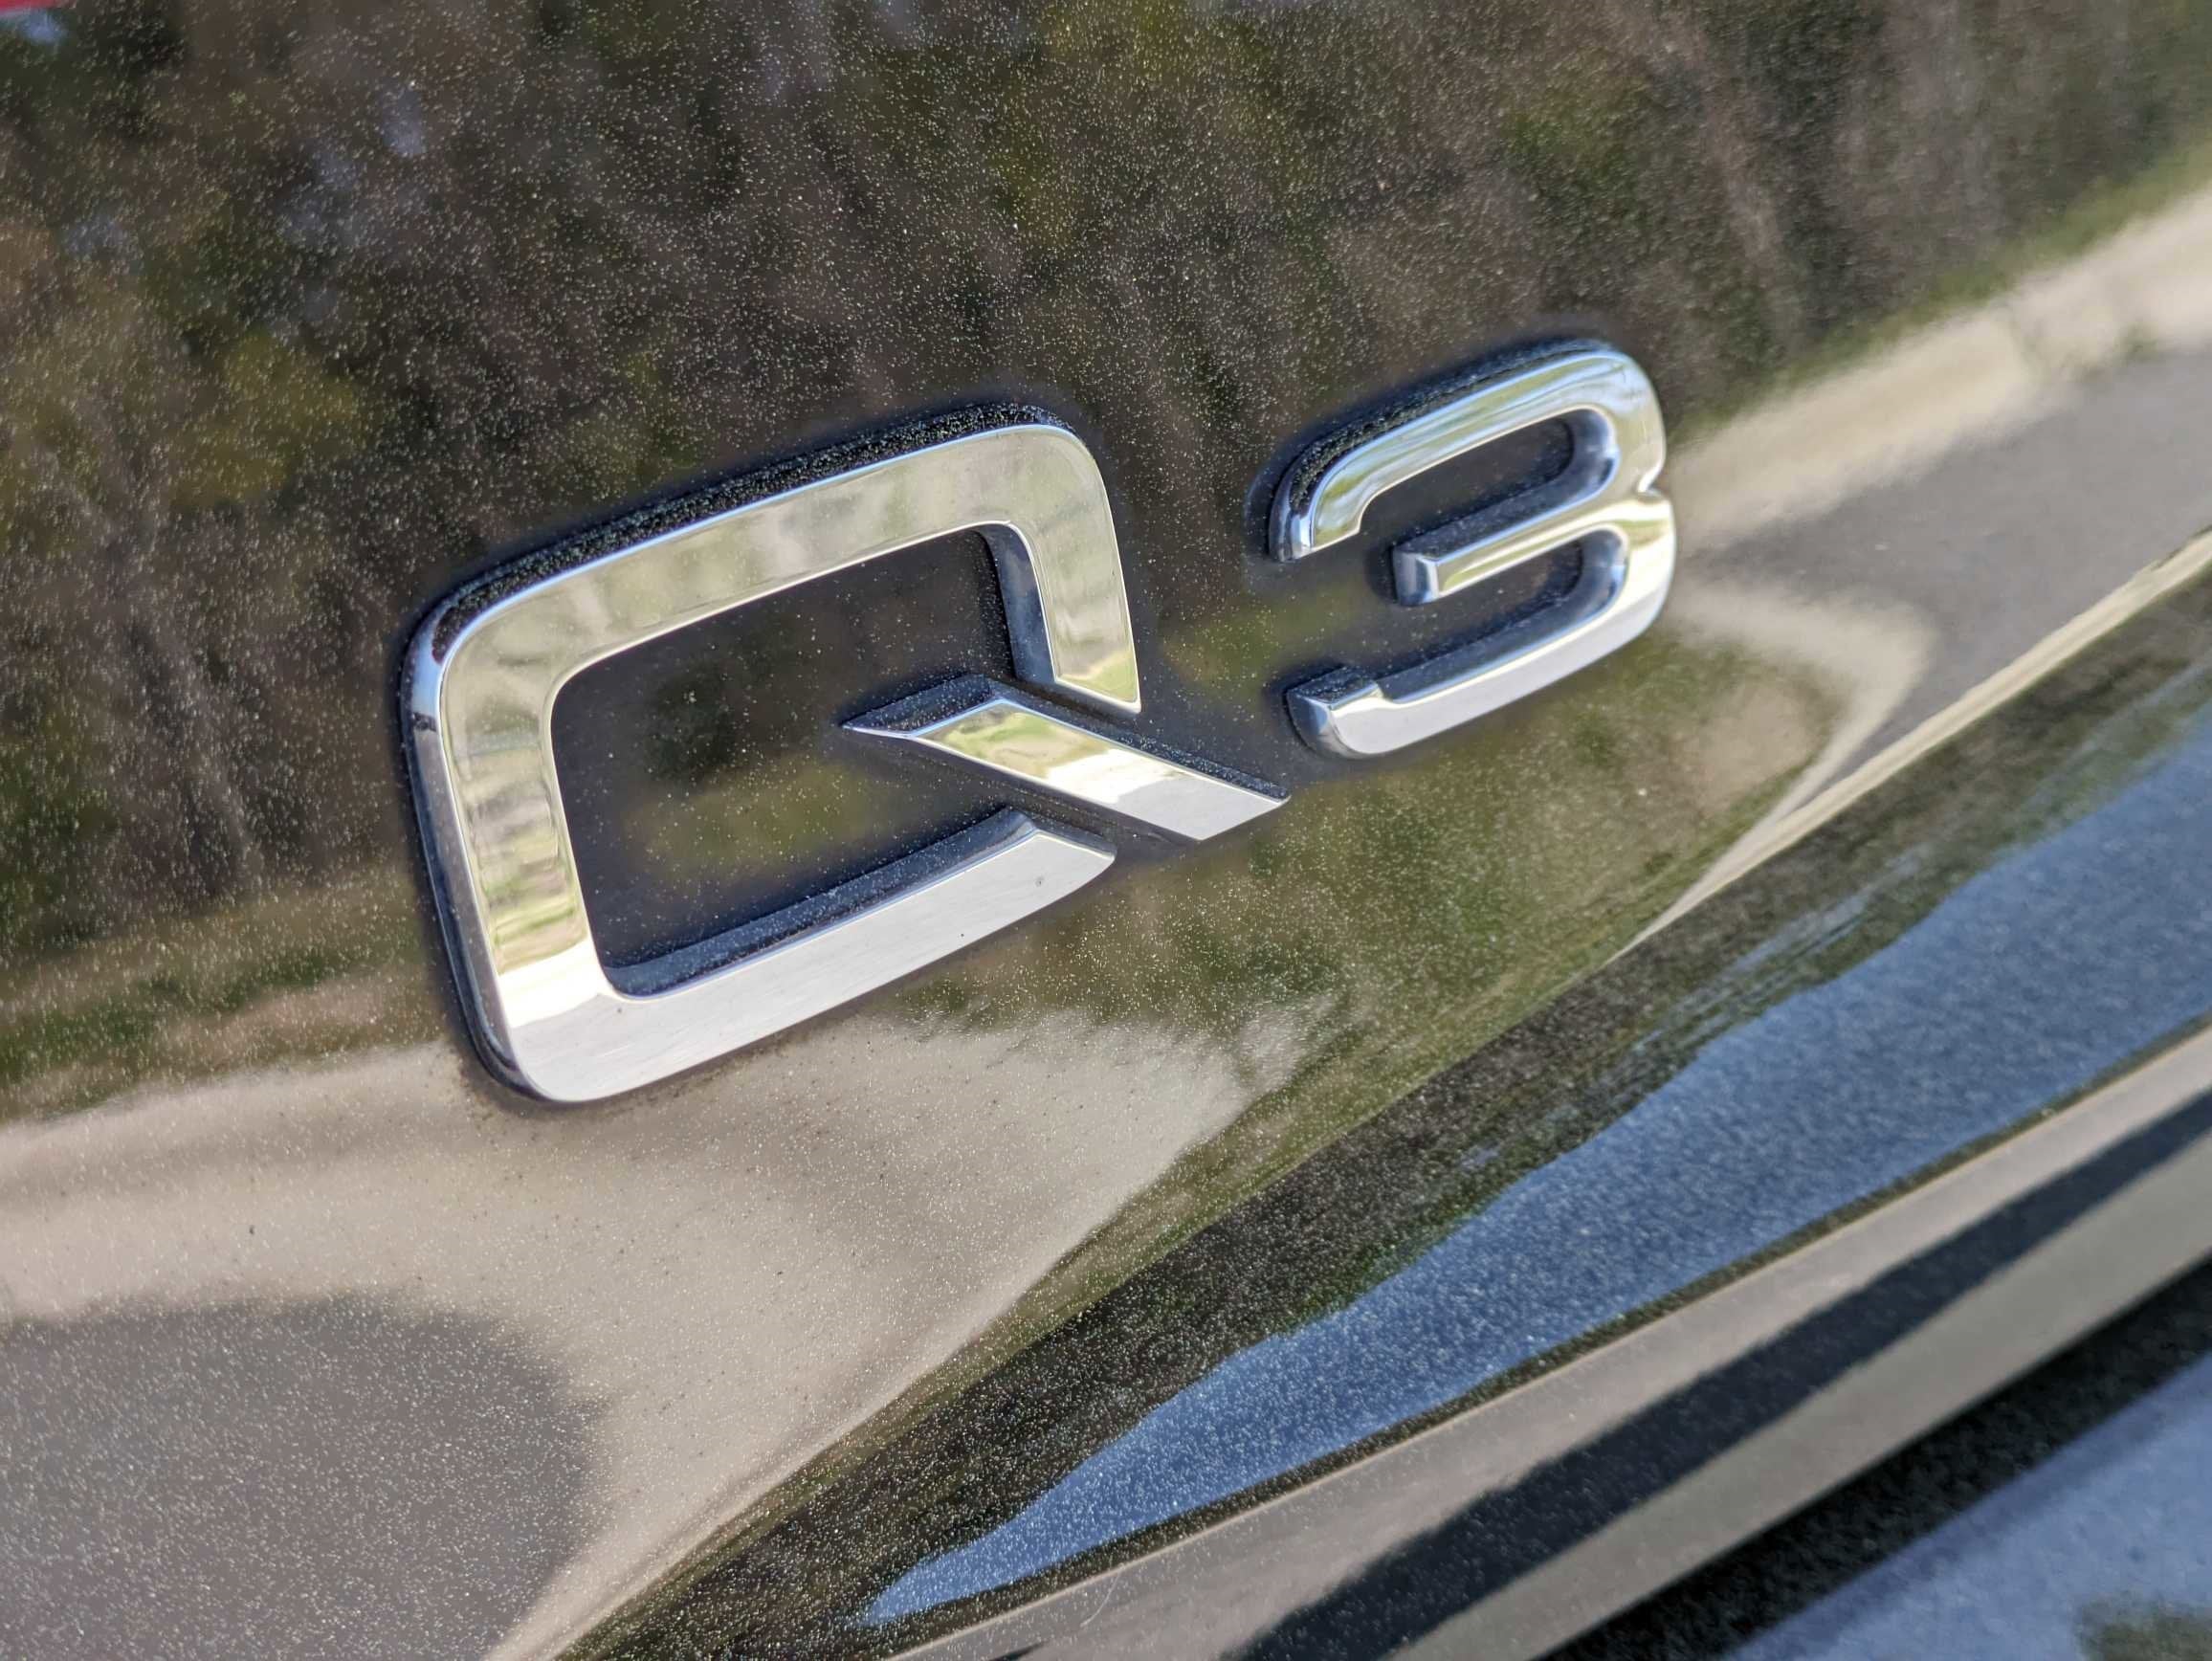 2017 Audi Q3 Premium